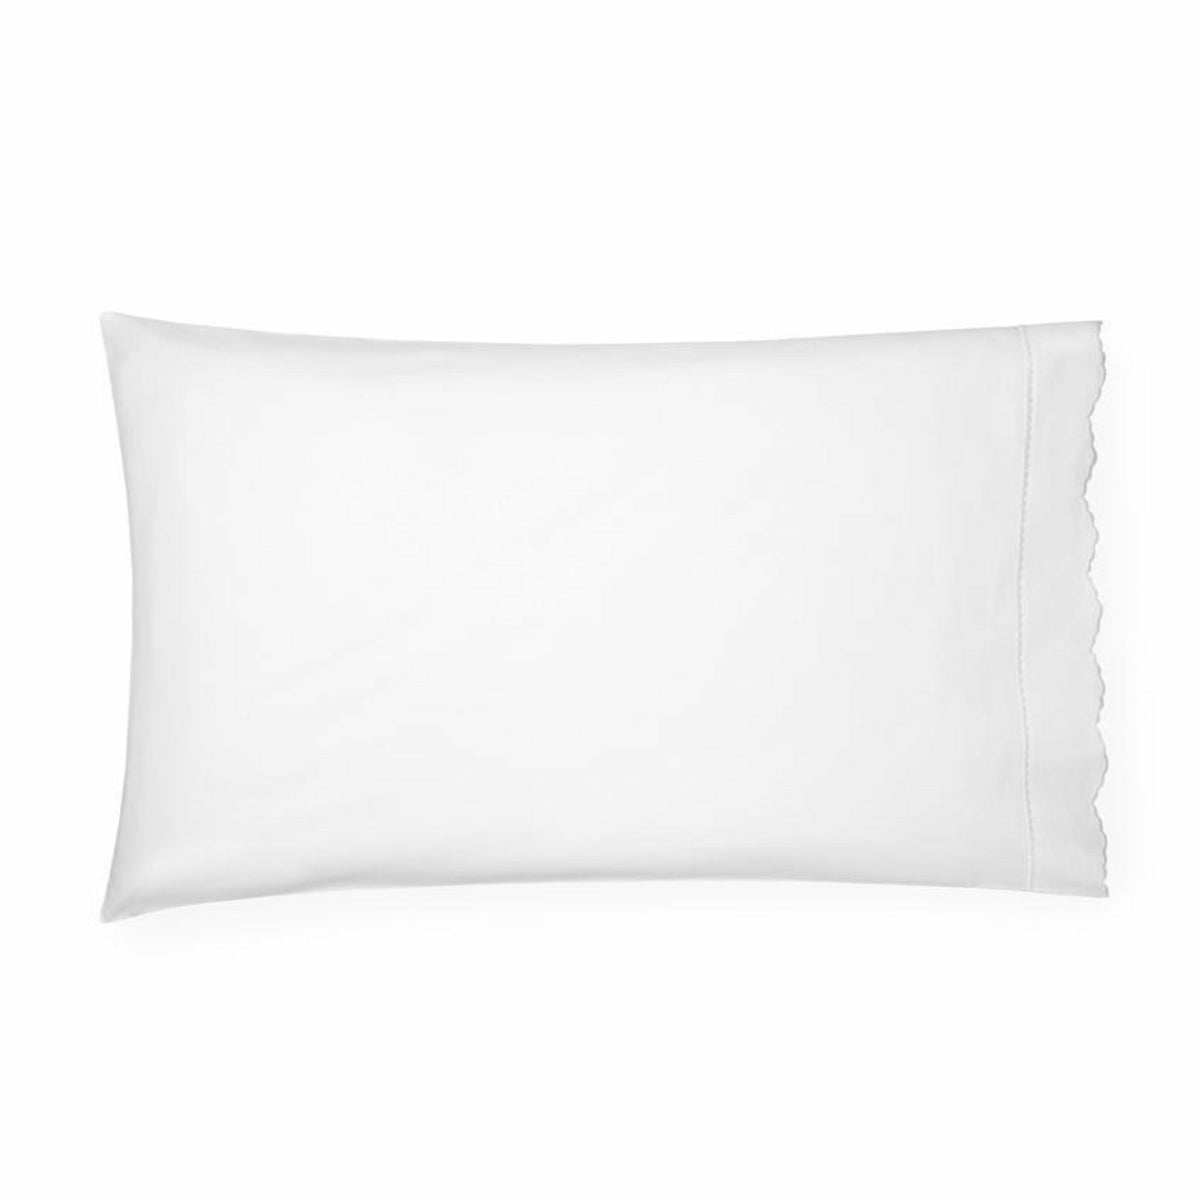 Sferra Pettine Bedding Collection Pillowcase White/White Fine Linens